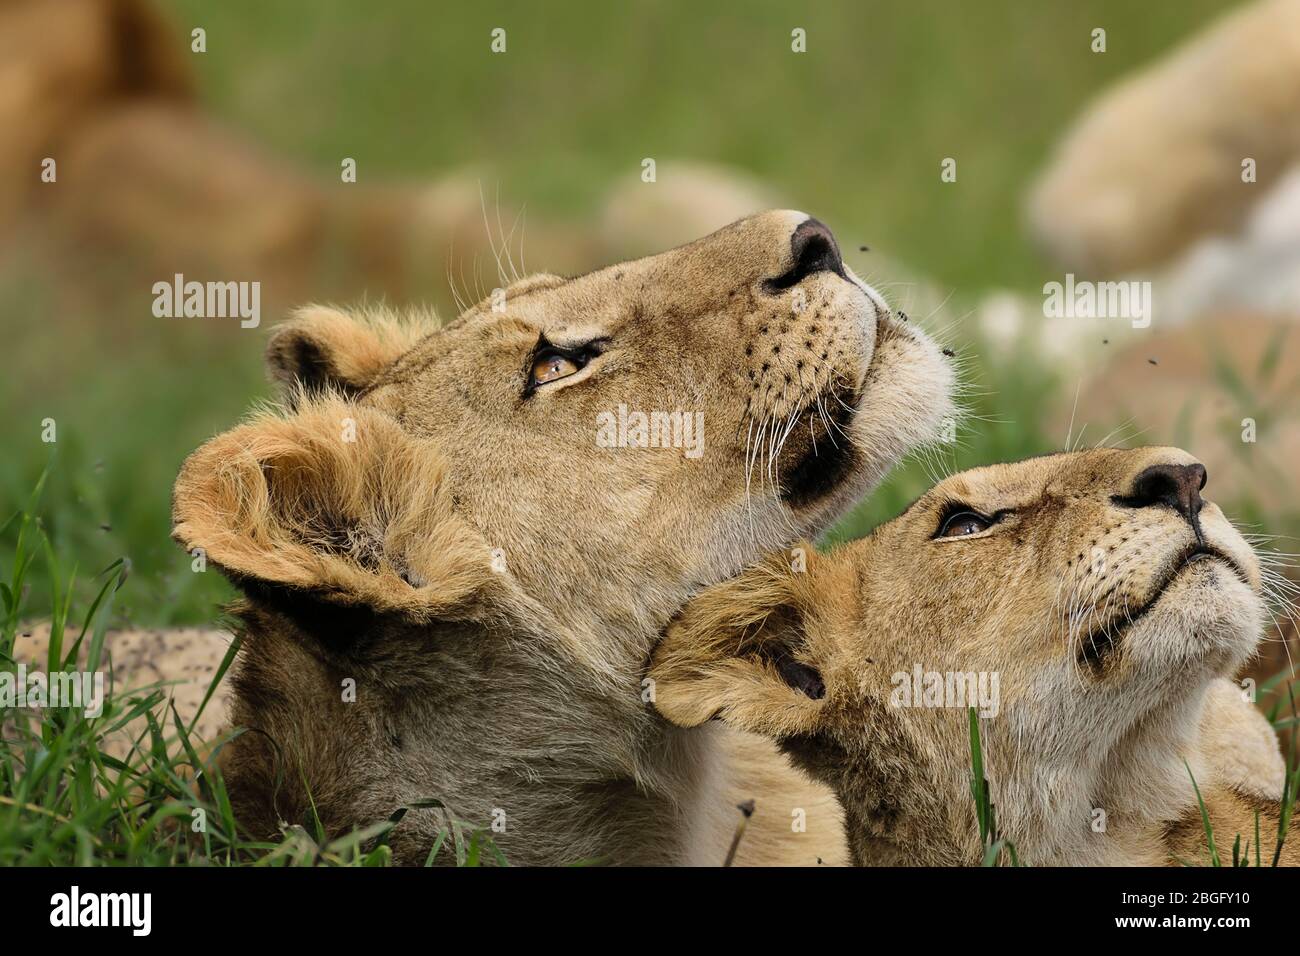 Lions looking up, Maasai Mara, Kenya Stock Photo